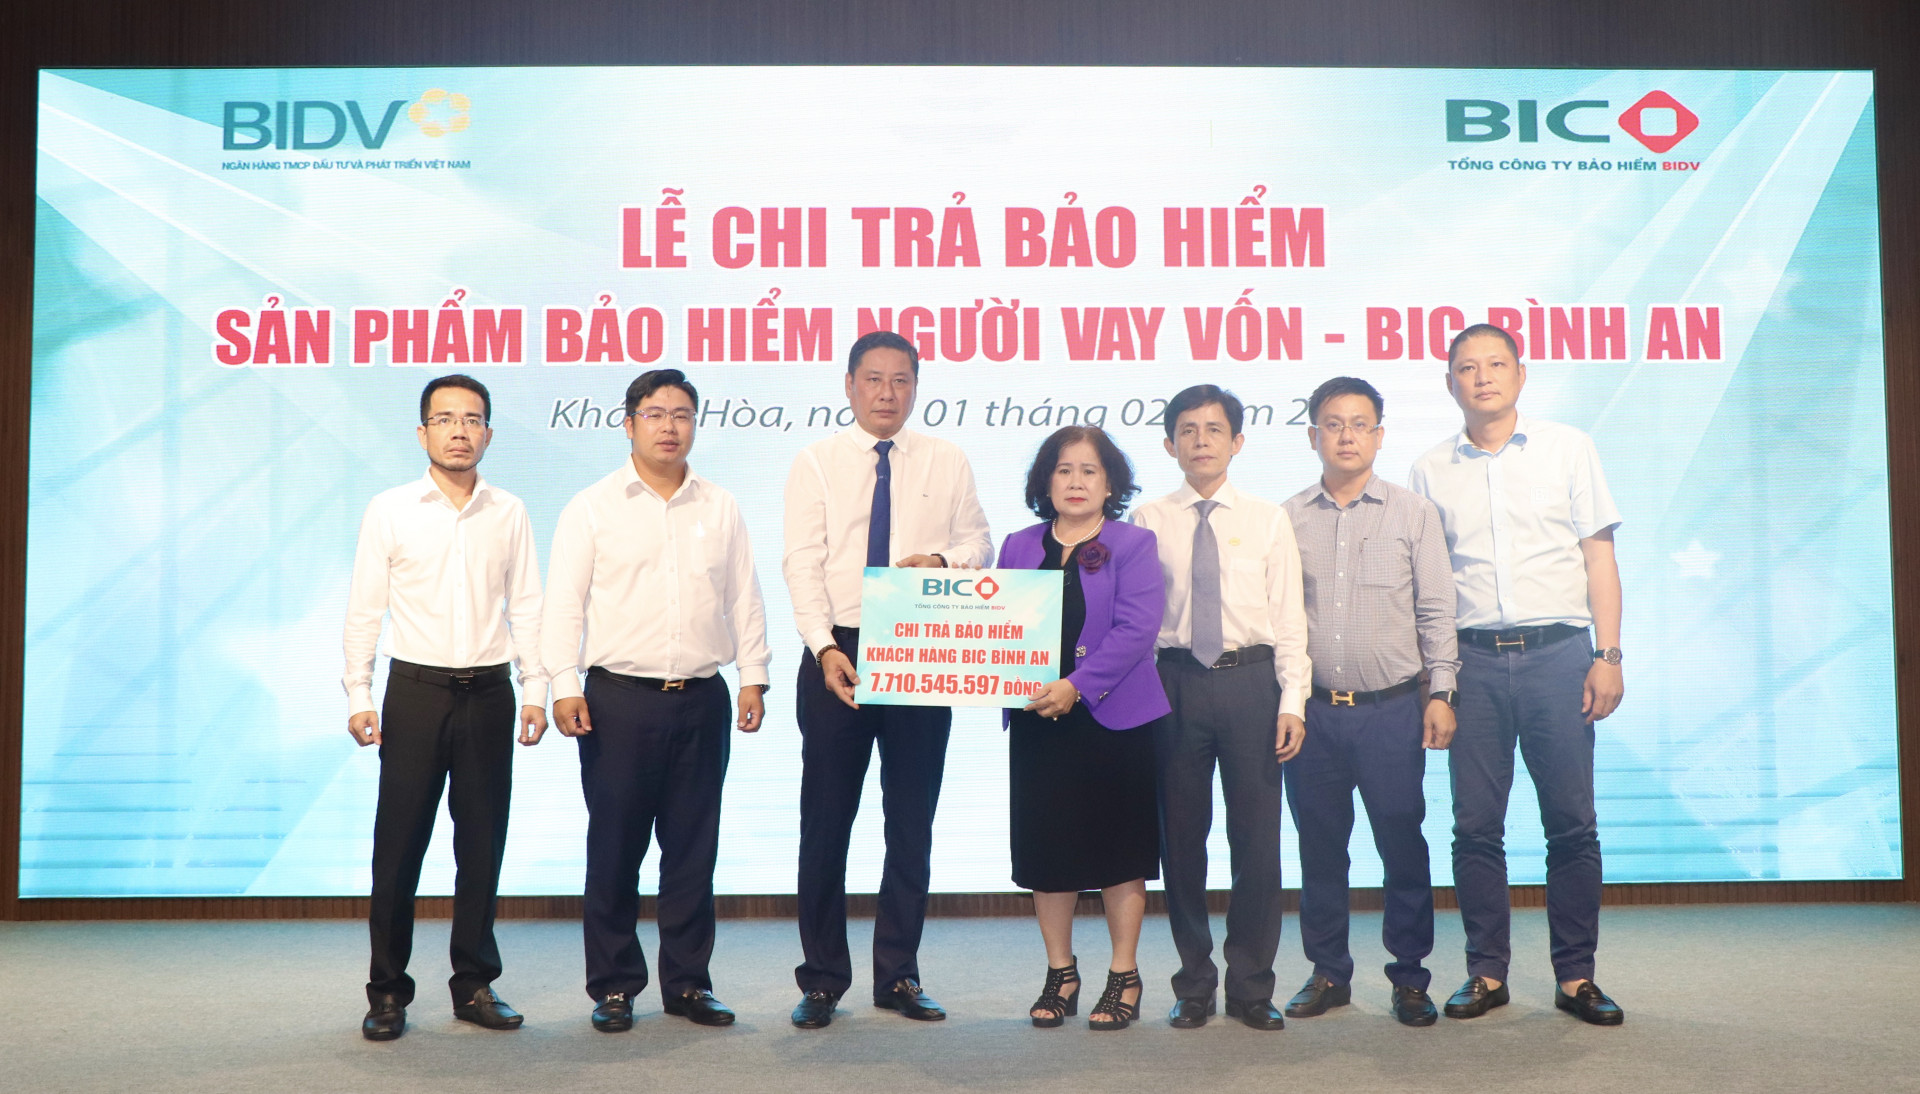 Lãnh đạo Ngân hàng Nhà nước Chi nhánh Khánh Hòa, đại diện BIC và Chi nhánh BIDV Khánh Hòa trao bảng tượng trưng số tiền bảo hiểm cho thân nhân khách hàng.

